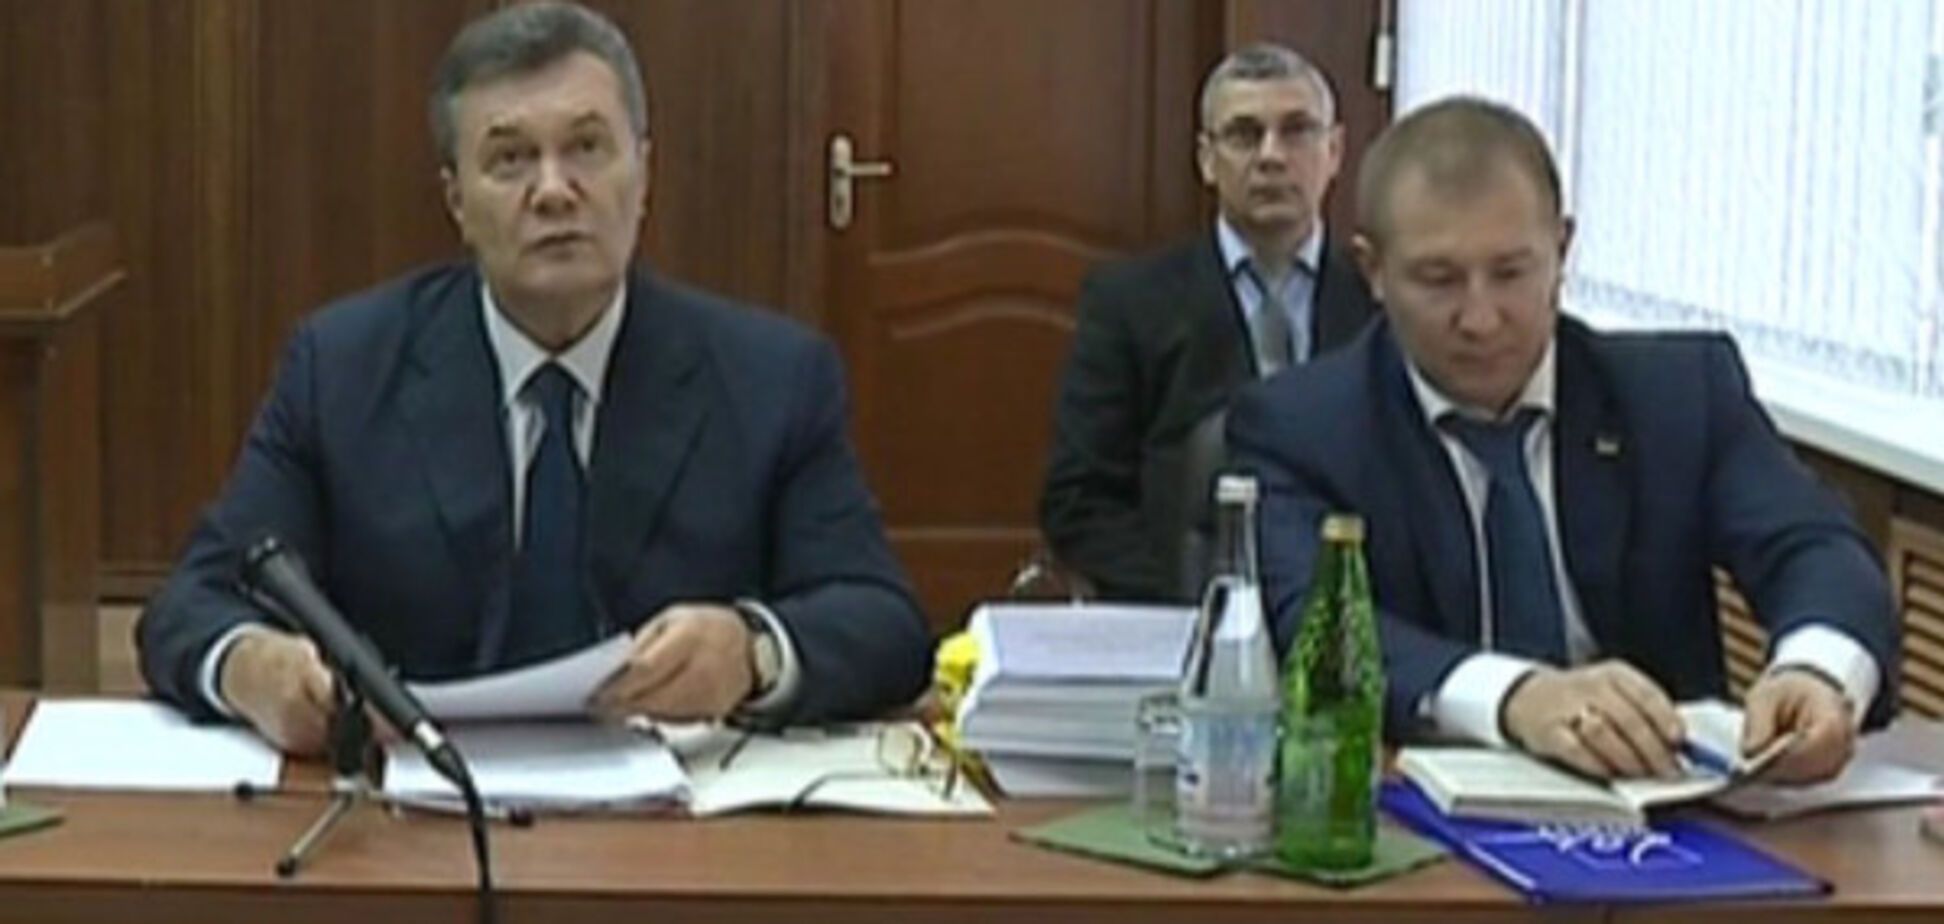 Все готово к слушанию: Януковичу посоветовали не ждать приглашения от российского суда